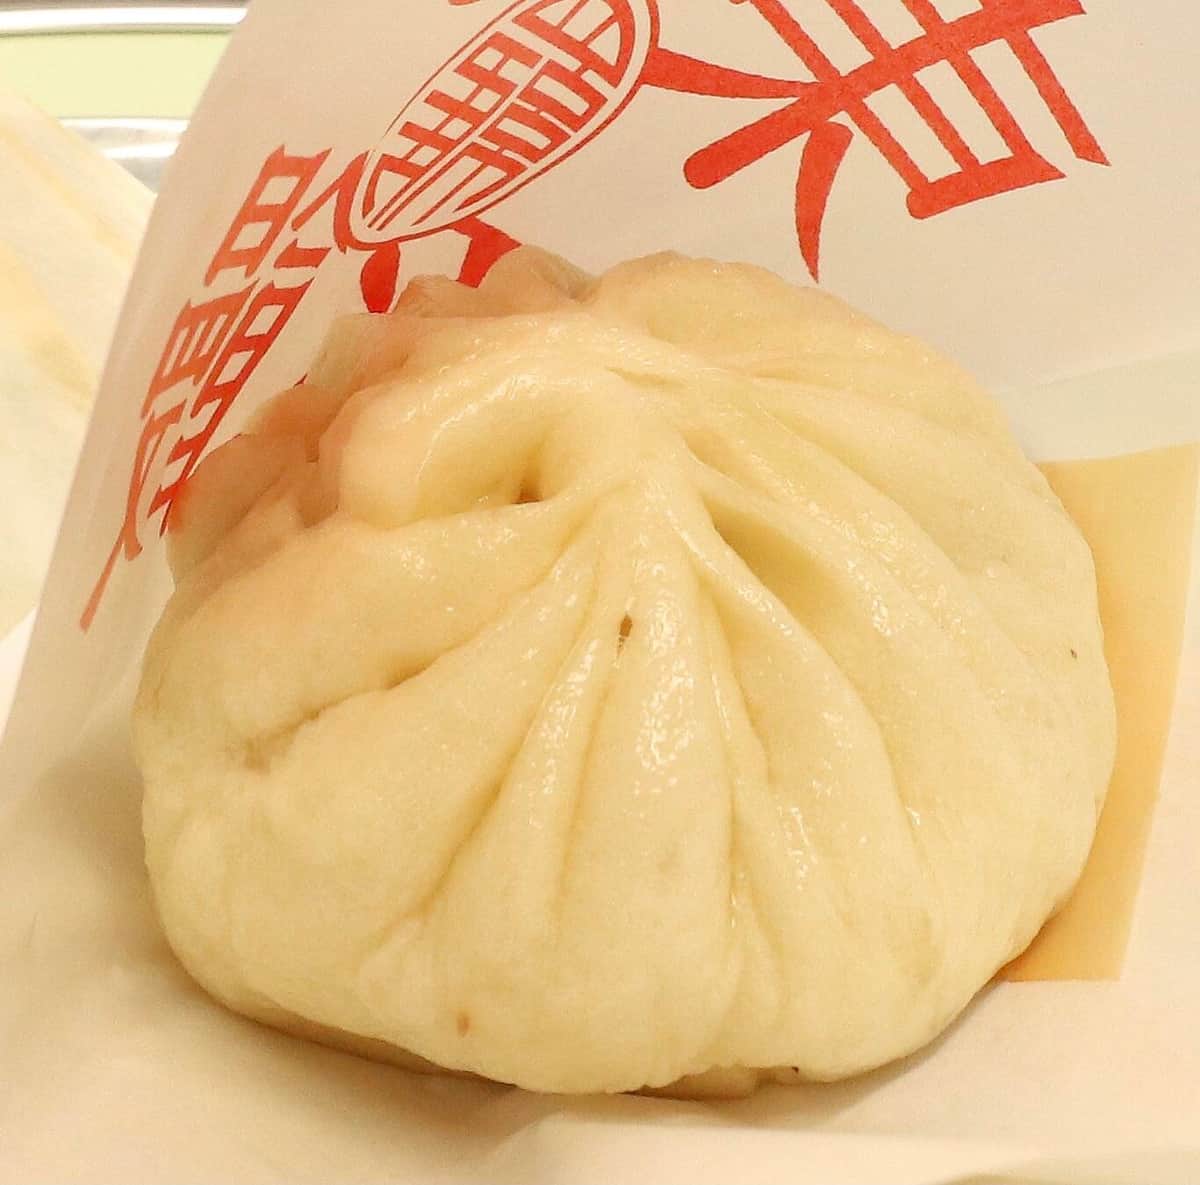 「羅家 東京豚饅」で提供される「豚饅」